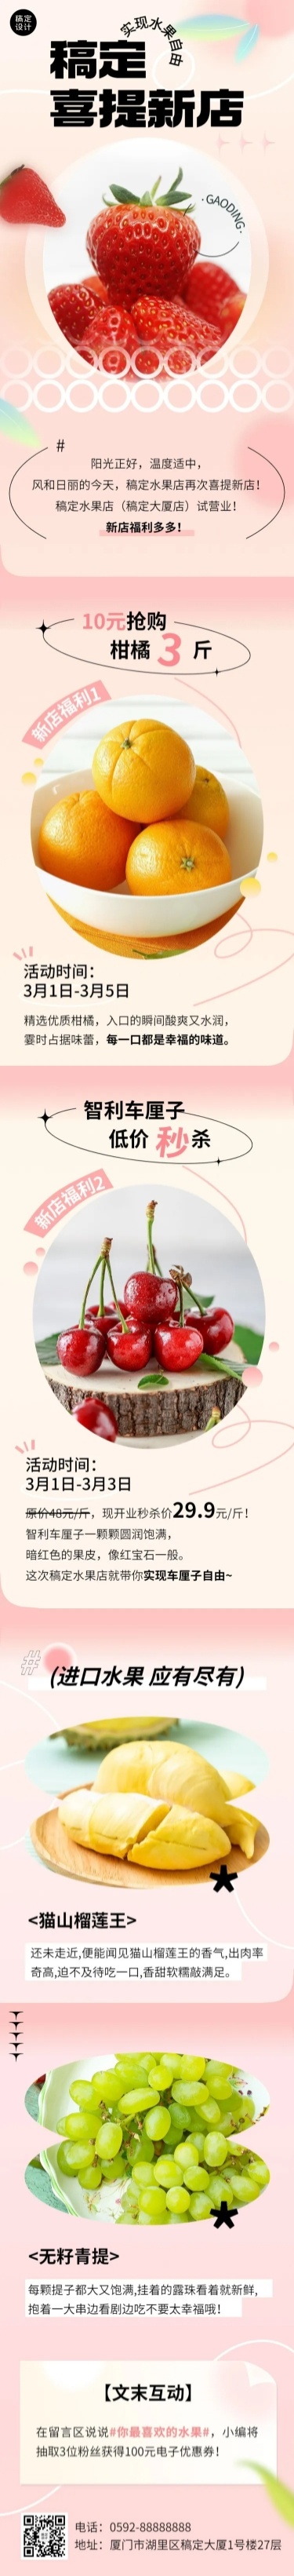 餐饮美食水果新店开业文章长图